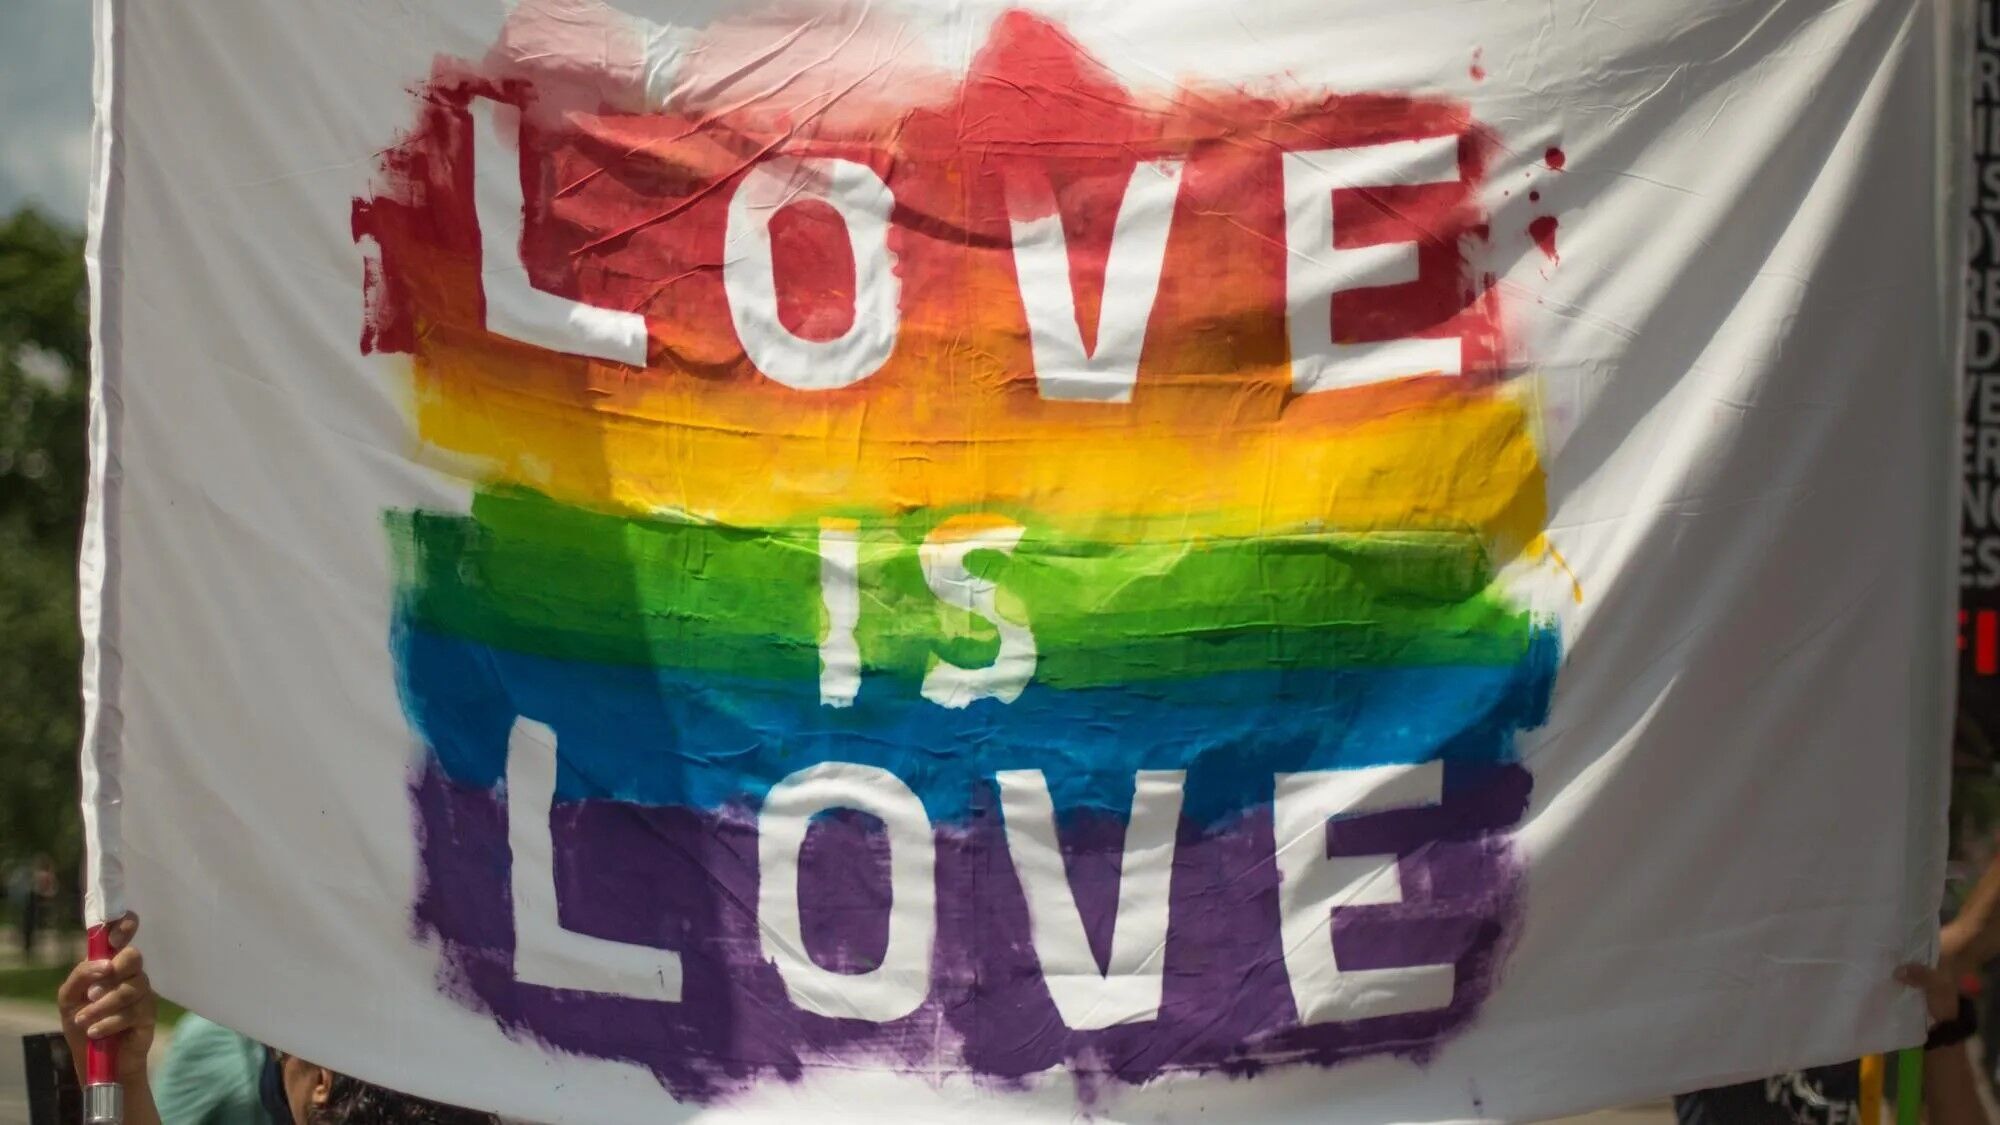 ЛГБТК+ спільнота налякана утисками та дискримінацією: ситуація з гомофобією в Туреччині стає гіршою